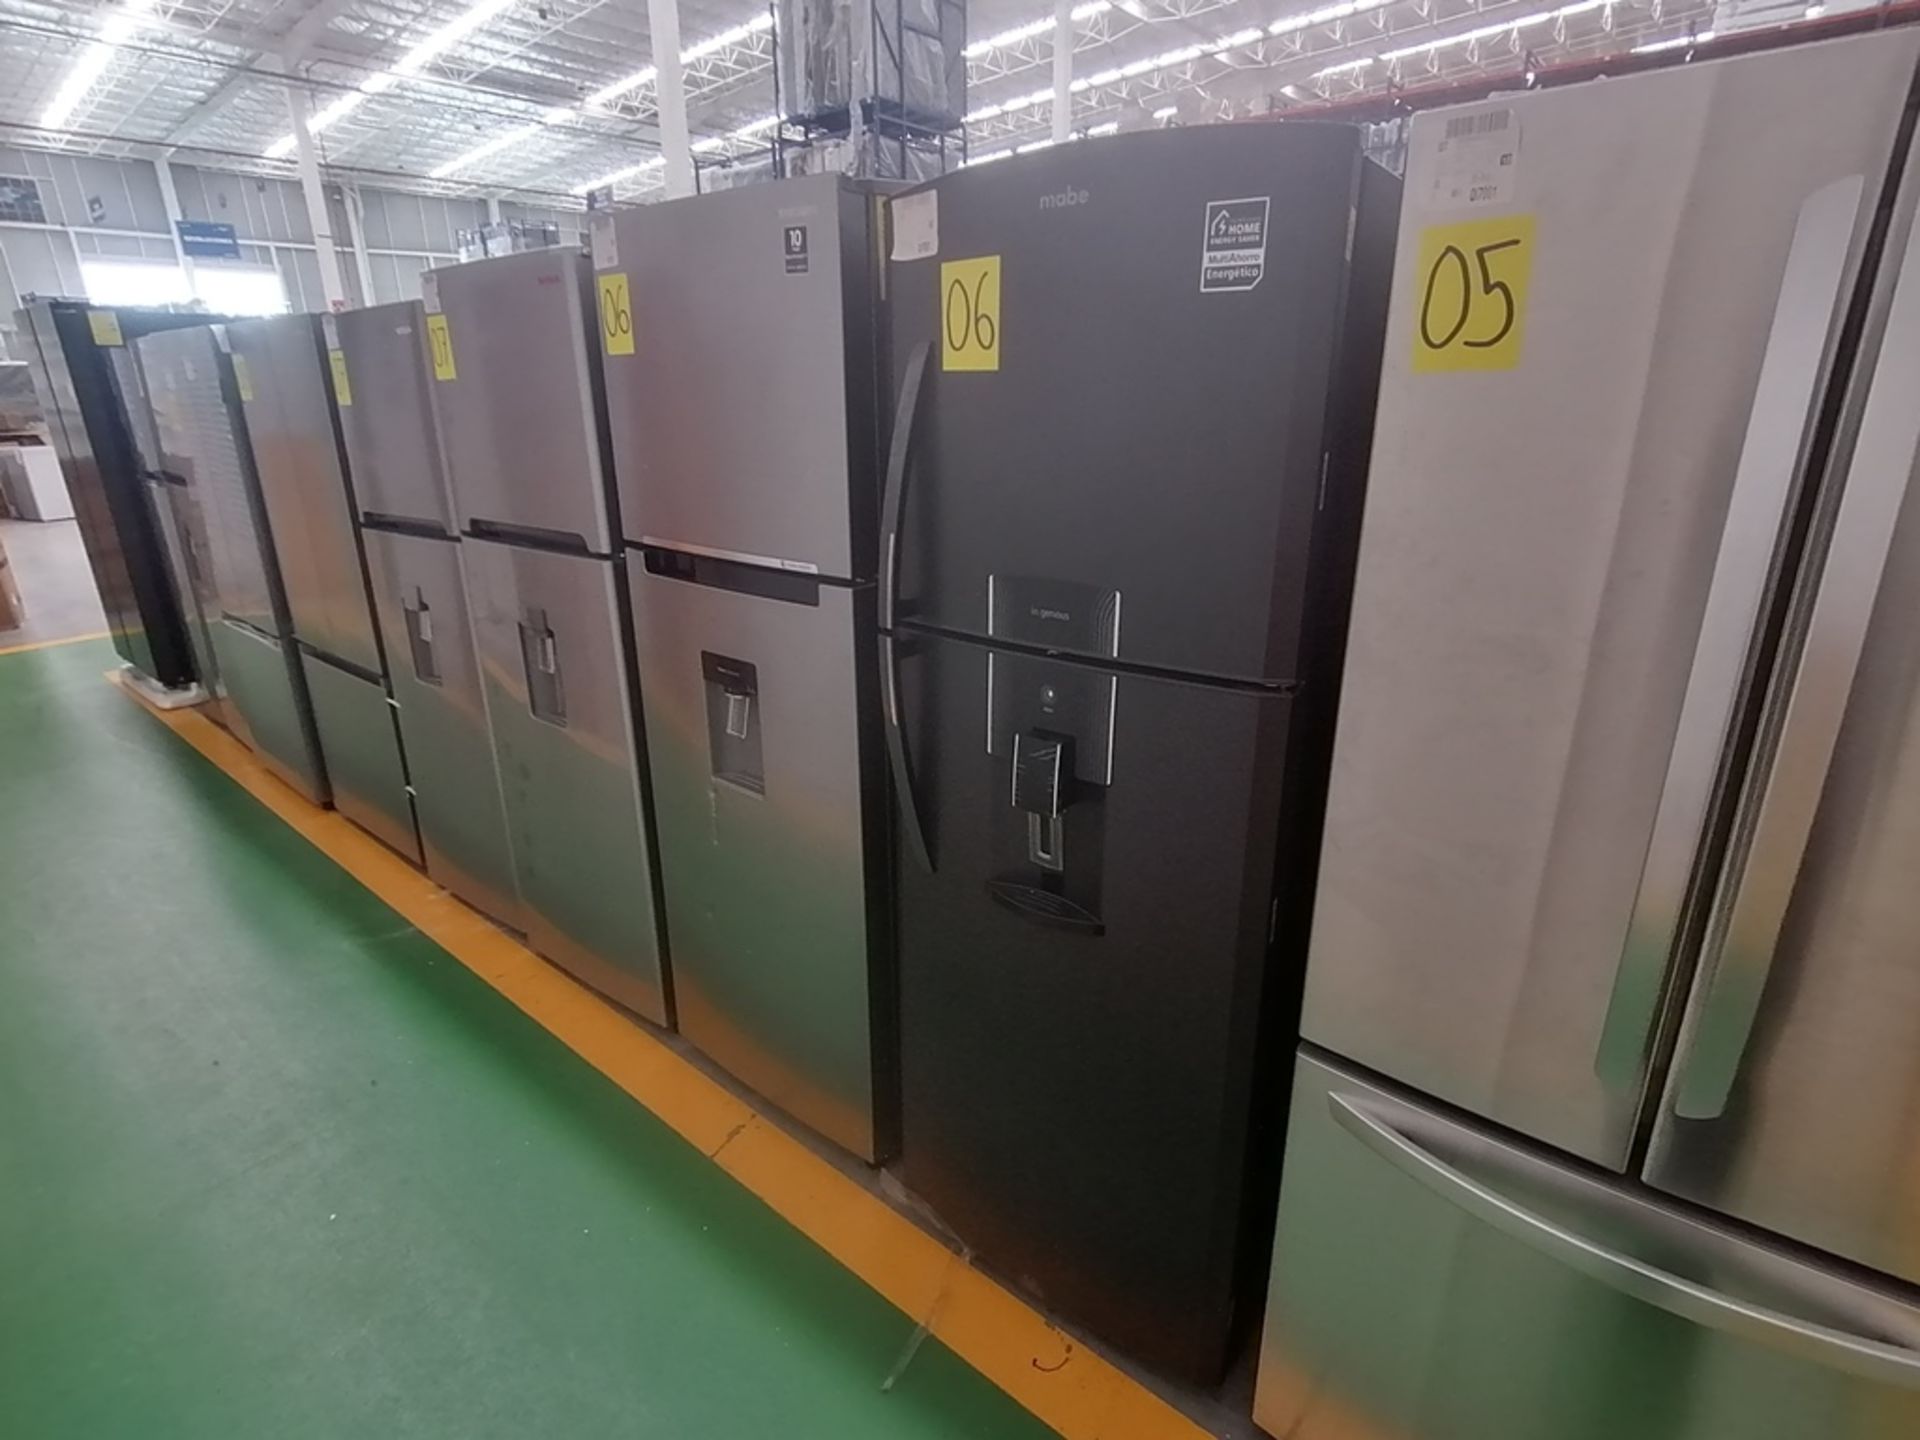 Lote de 2 refrigeradores incluye: 1 Refrigerador con dispensador de agua, Marca Mabe, Modelo RME360 - Image 2 of 15